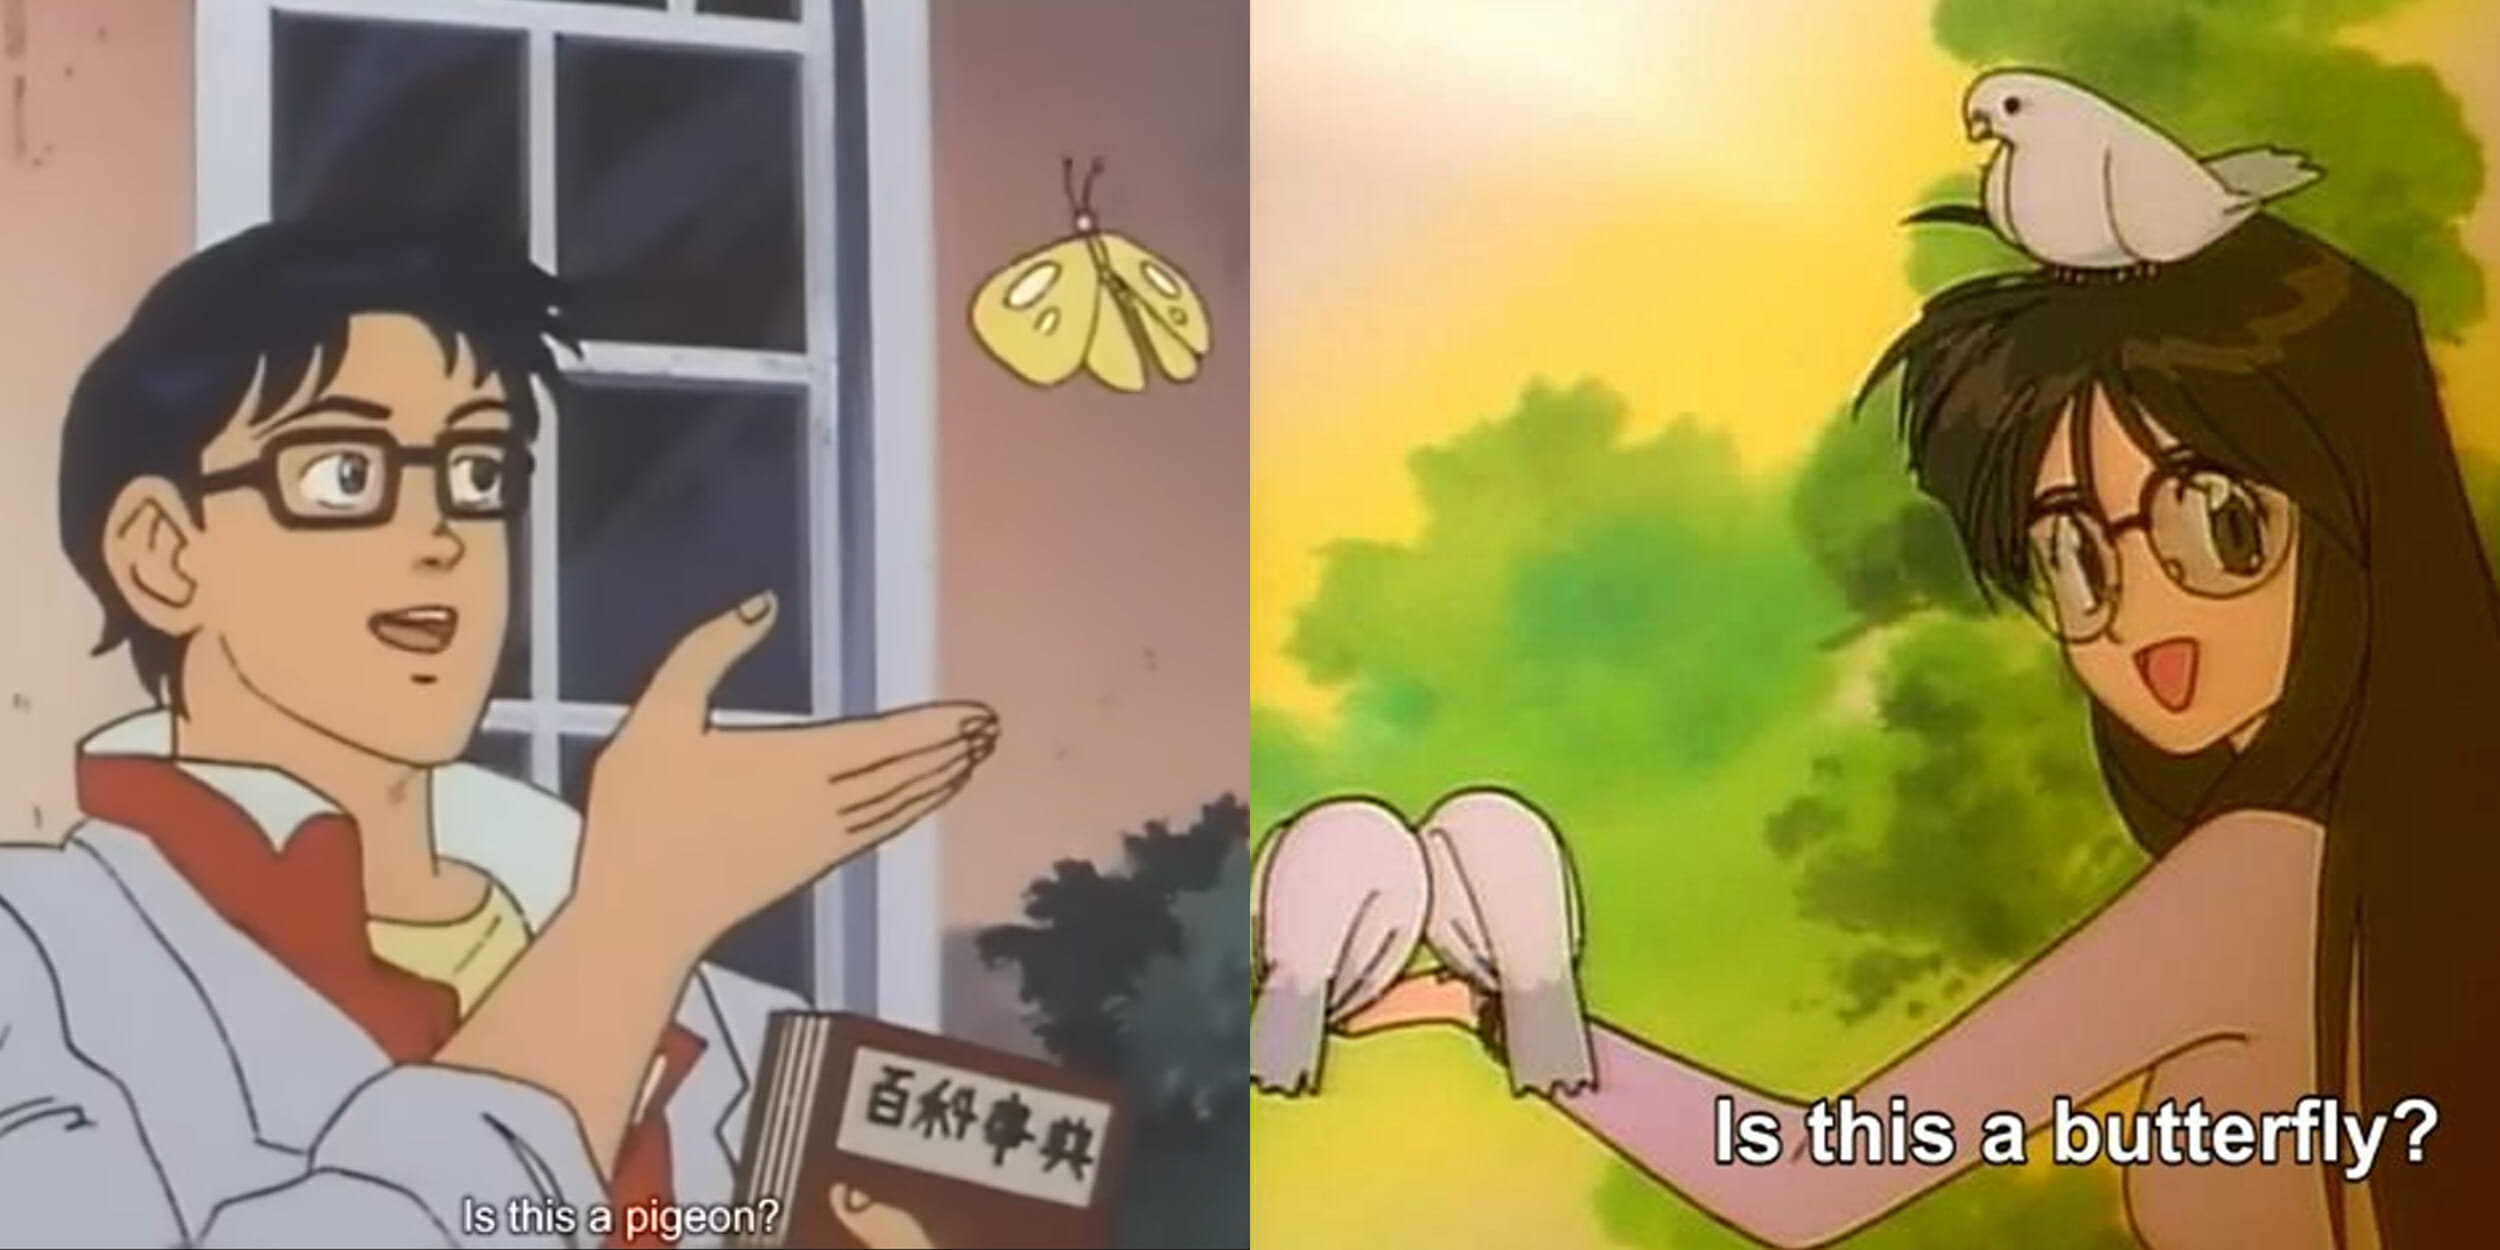 Anime Butterfly meme Art Print for Sale by deecee95  Redbubble